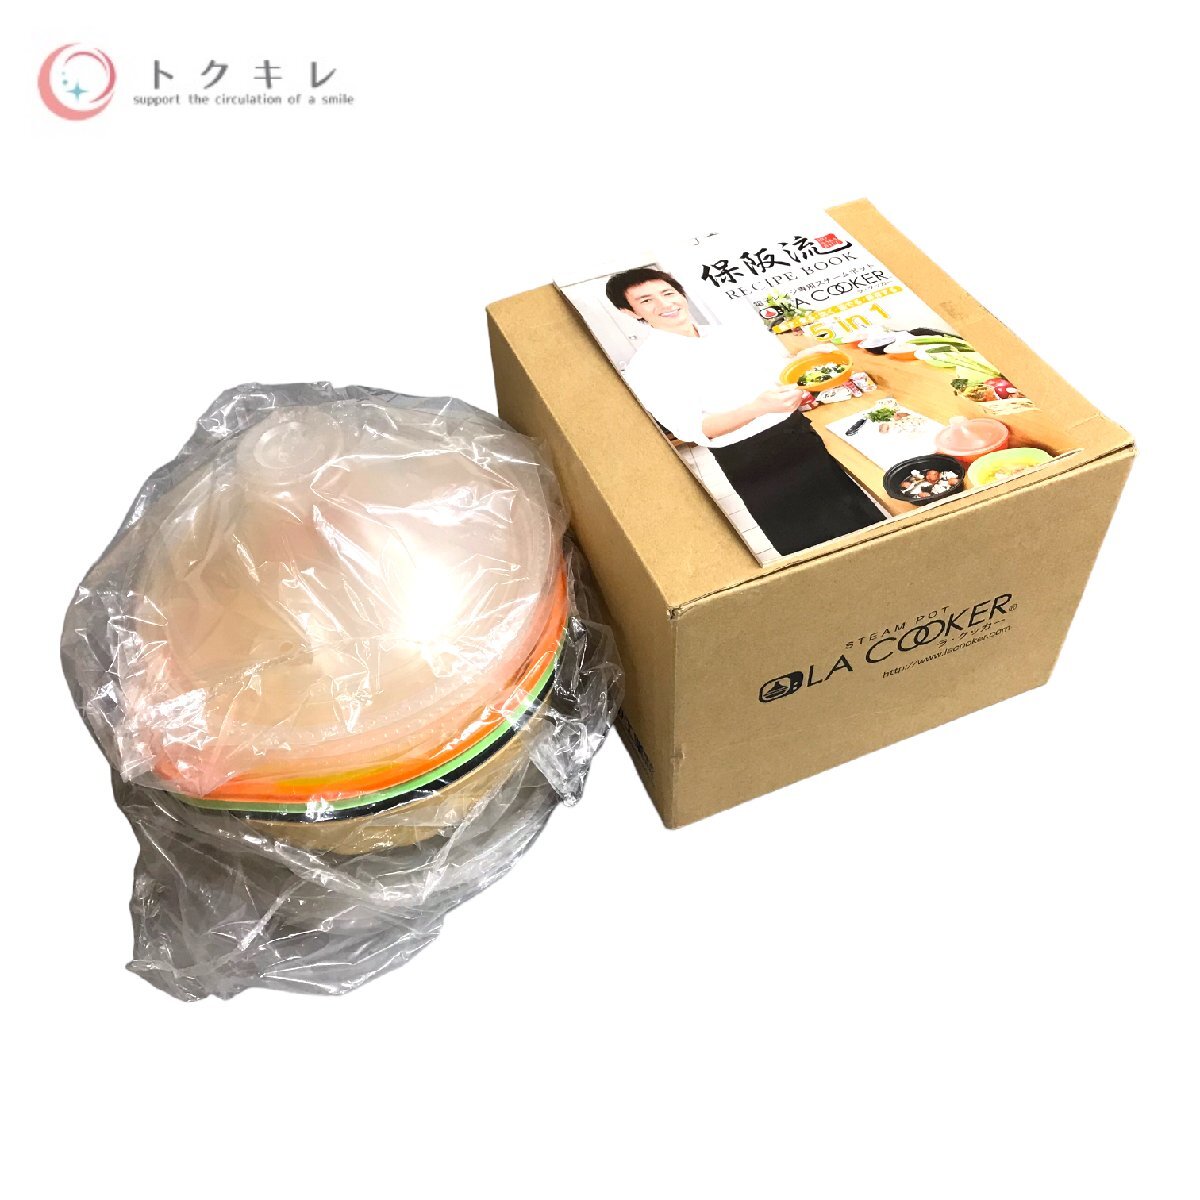 !1 иен старт бесплатная доставка товары для кухни кухонная утварь много 4 позиций комплект iwaki (i подмышка )ma year гарантия ..la* кухонная утварь SC57M-2MBRD перепродажа .